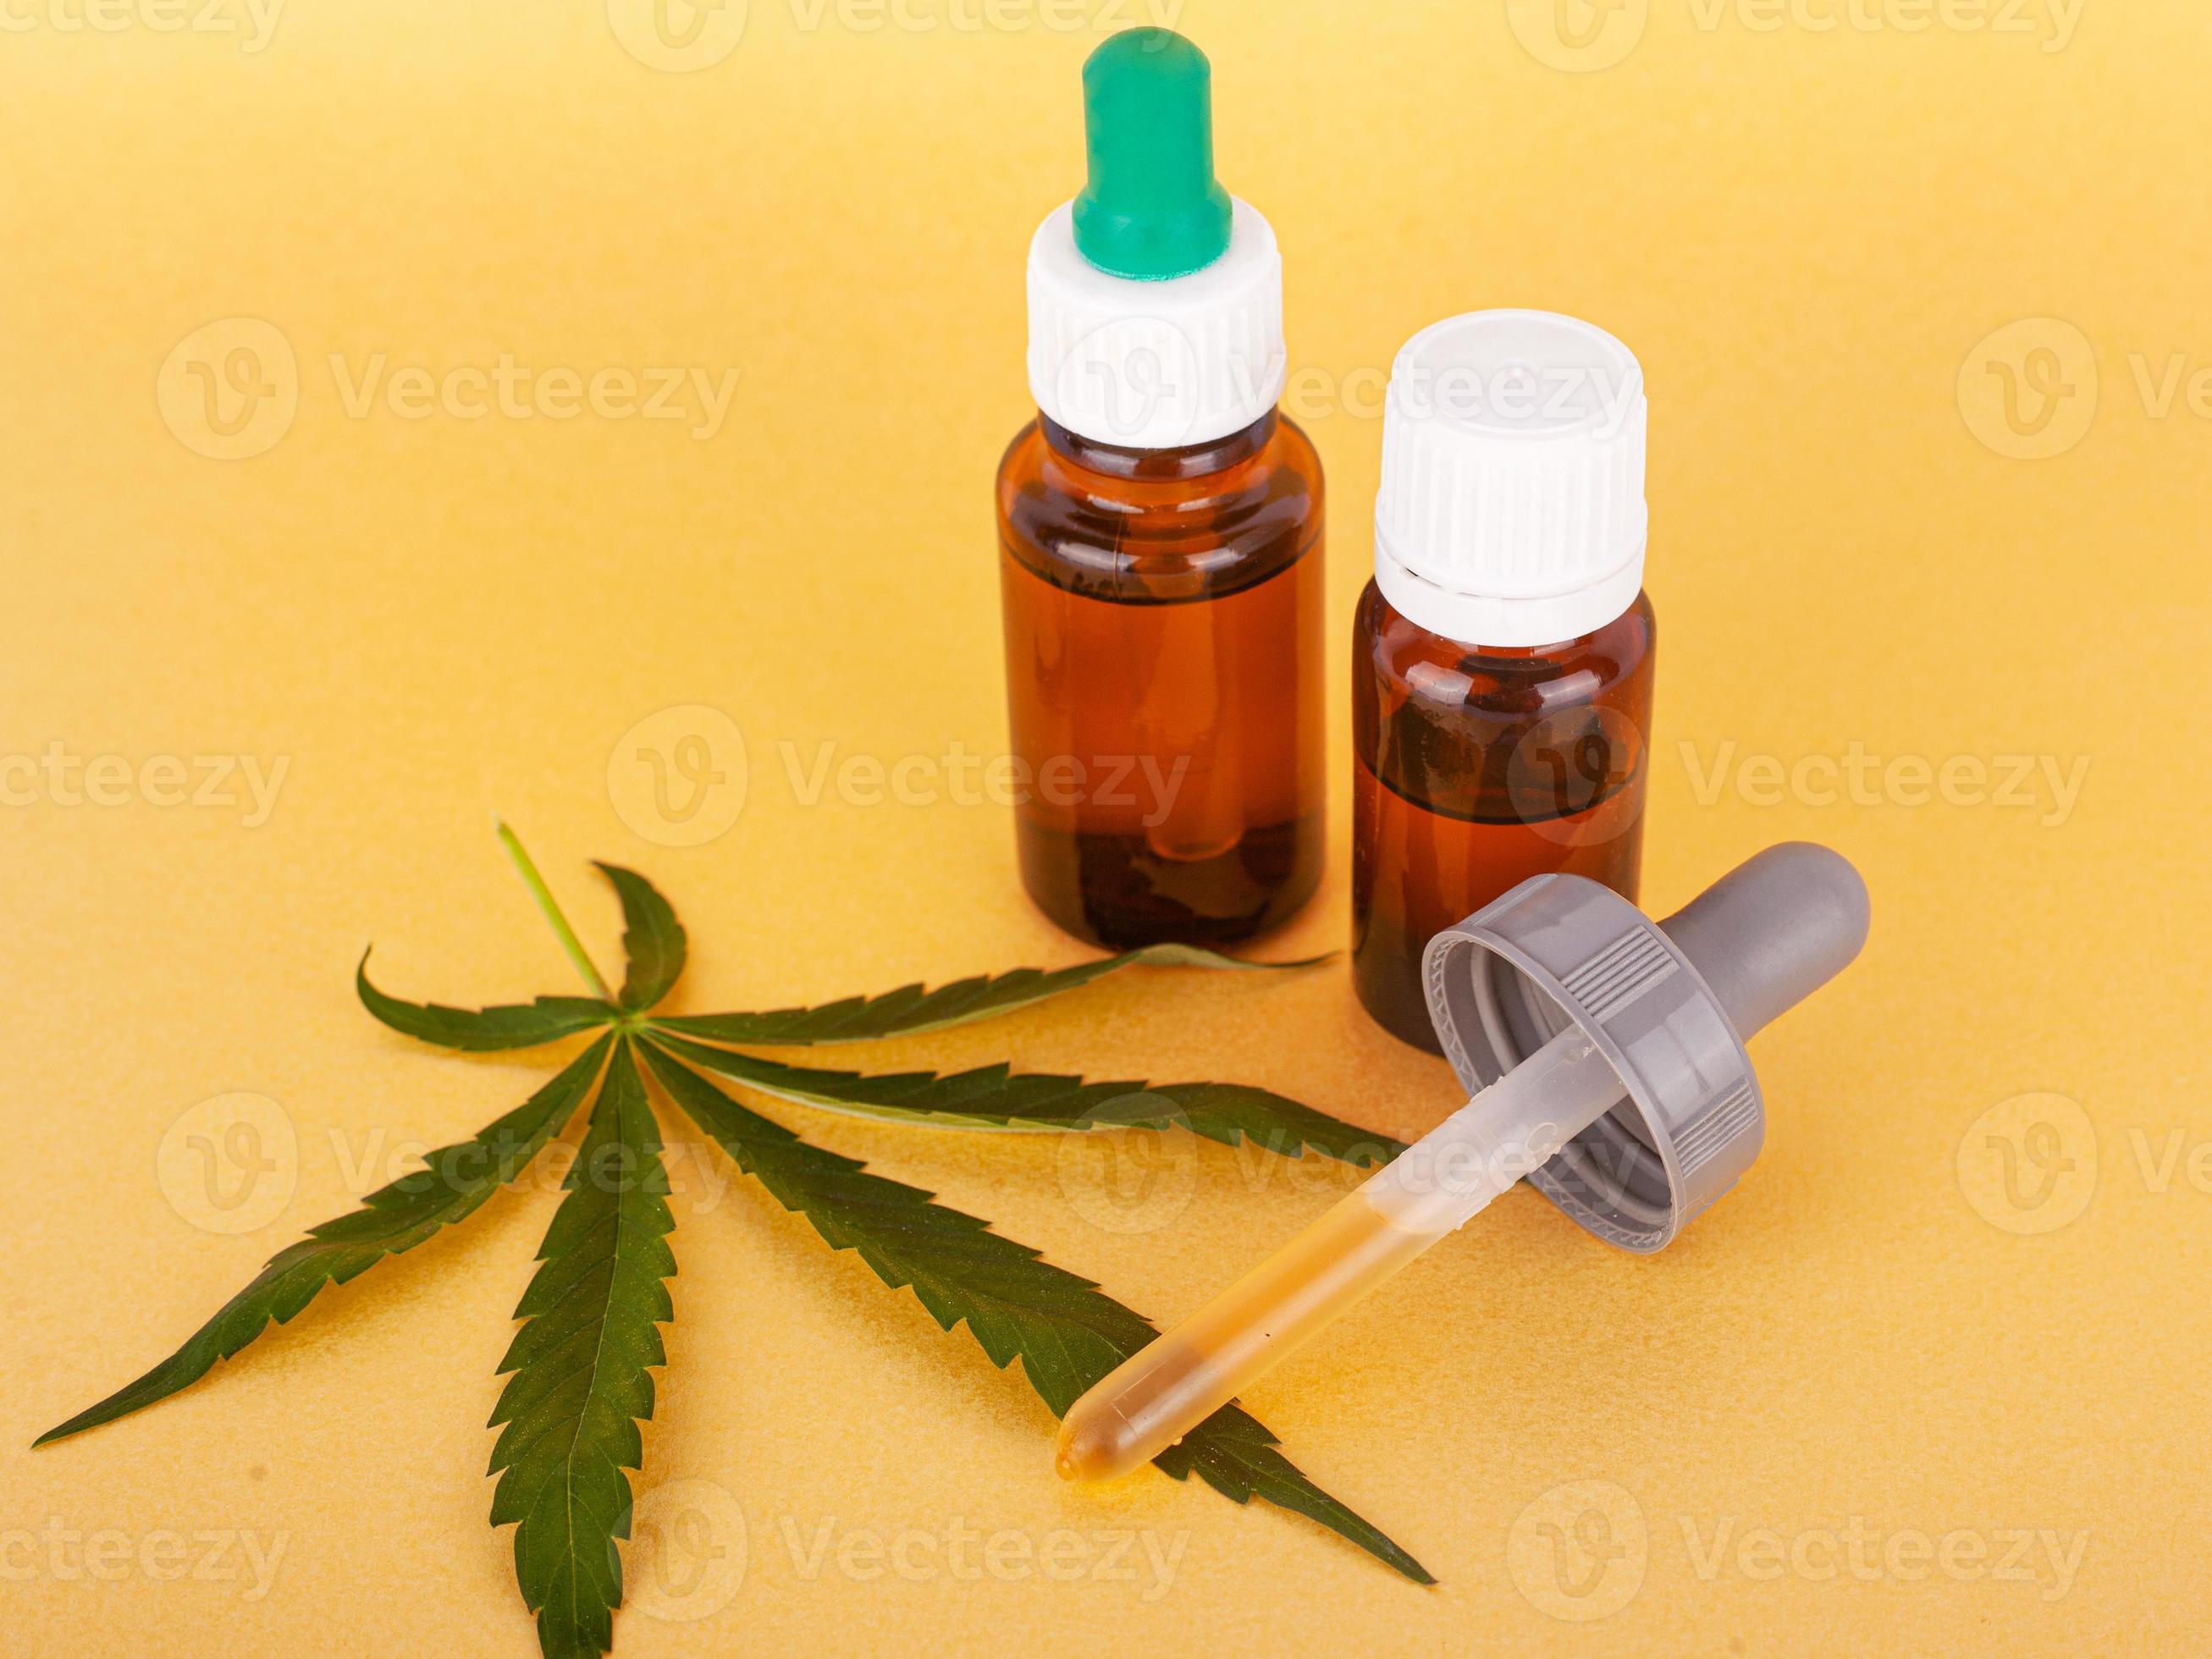 extrato de cannabis medicinal contendo thc e cbd, óleo de cânhamo medicinal e folha verde sobre fundo amarelo foto